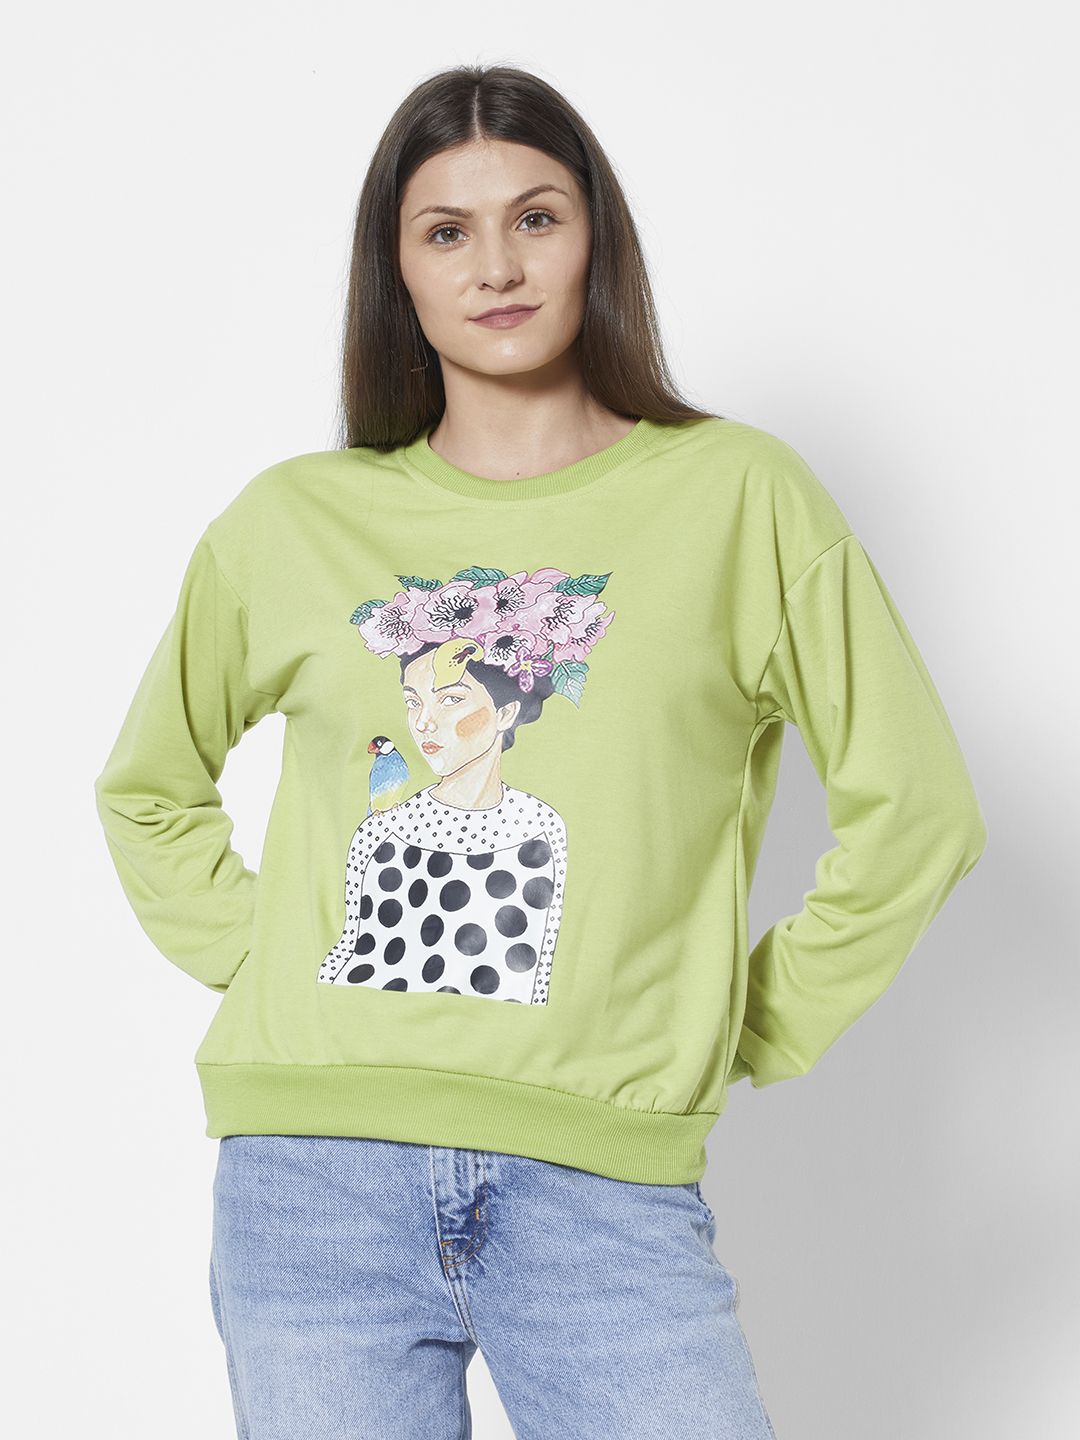 URBANIC Women Green Graphic Print Sweatshirt Price in India